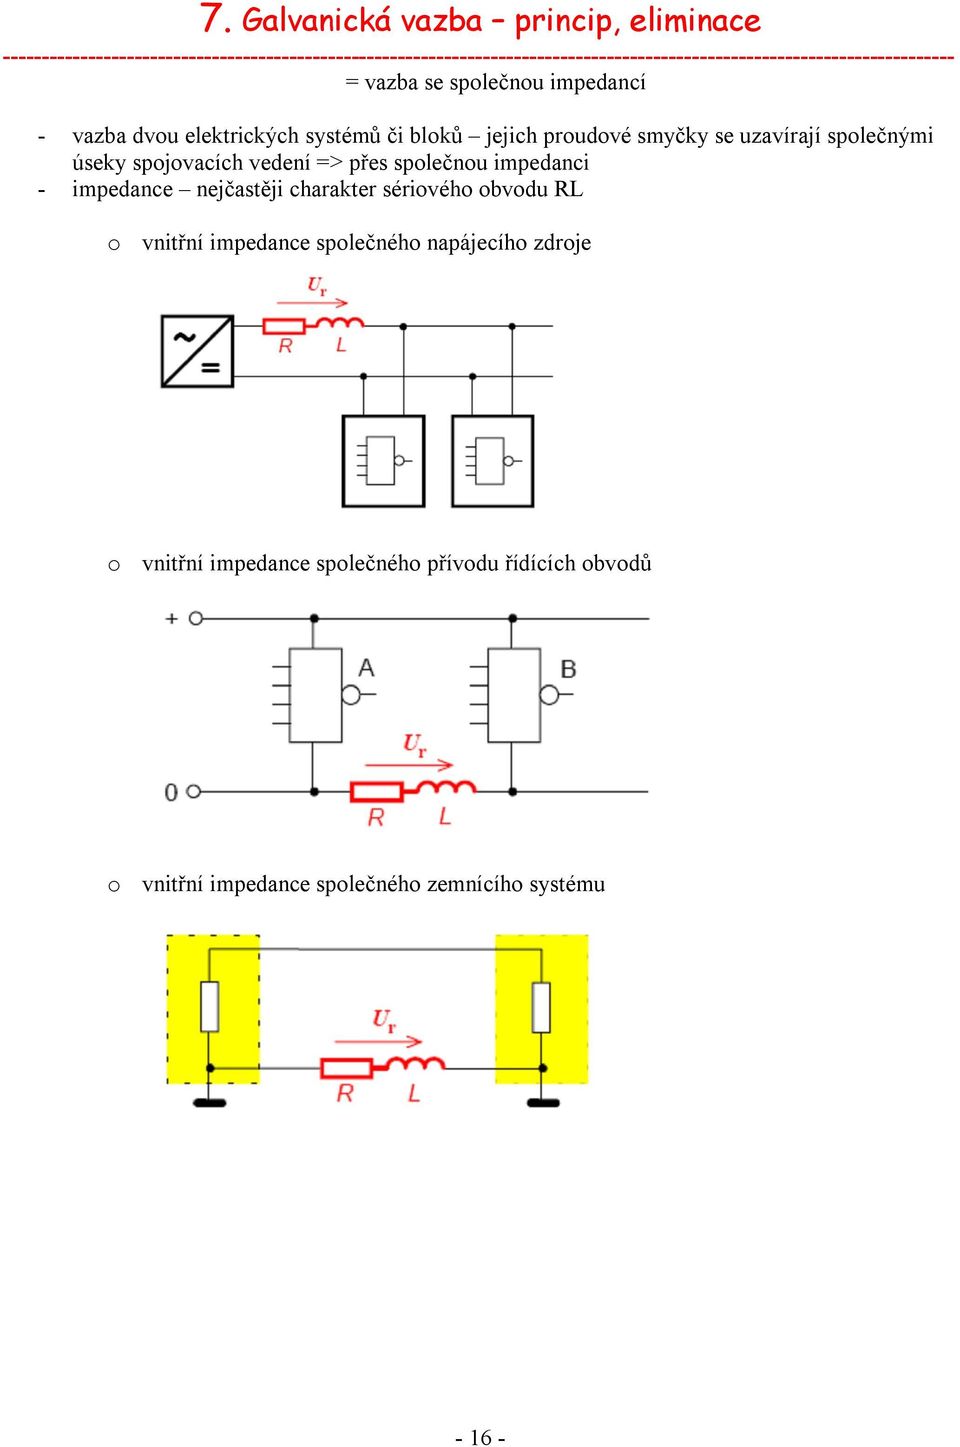 společnou impedancí - vazba dvou elektrických systémů či bloků jejich proudové smyčky se uzavírají společnými úseky spojovacích vedení =>